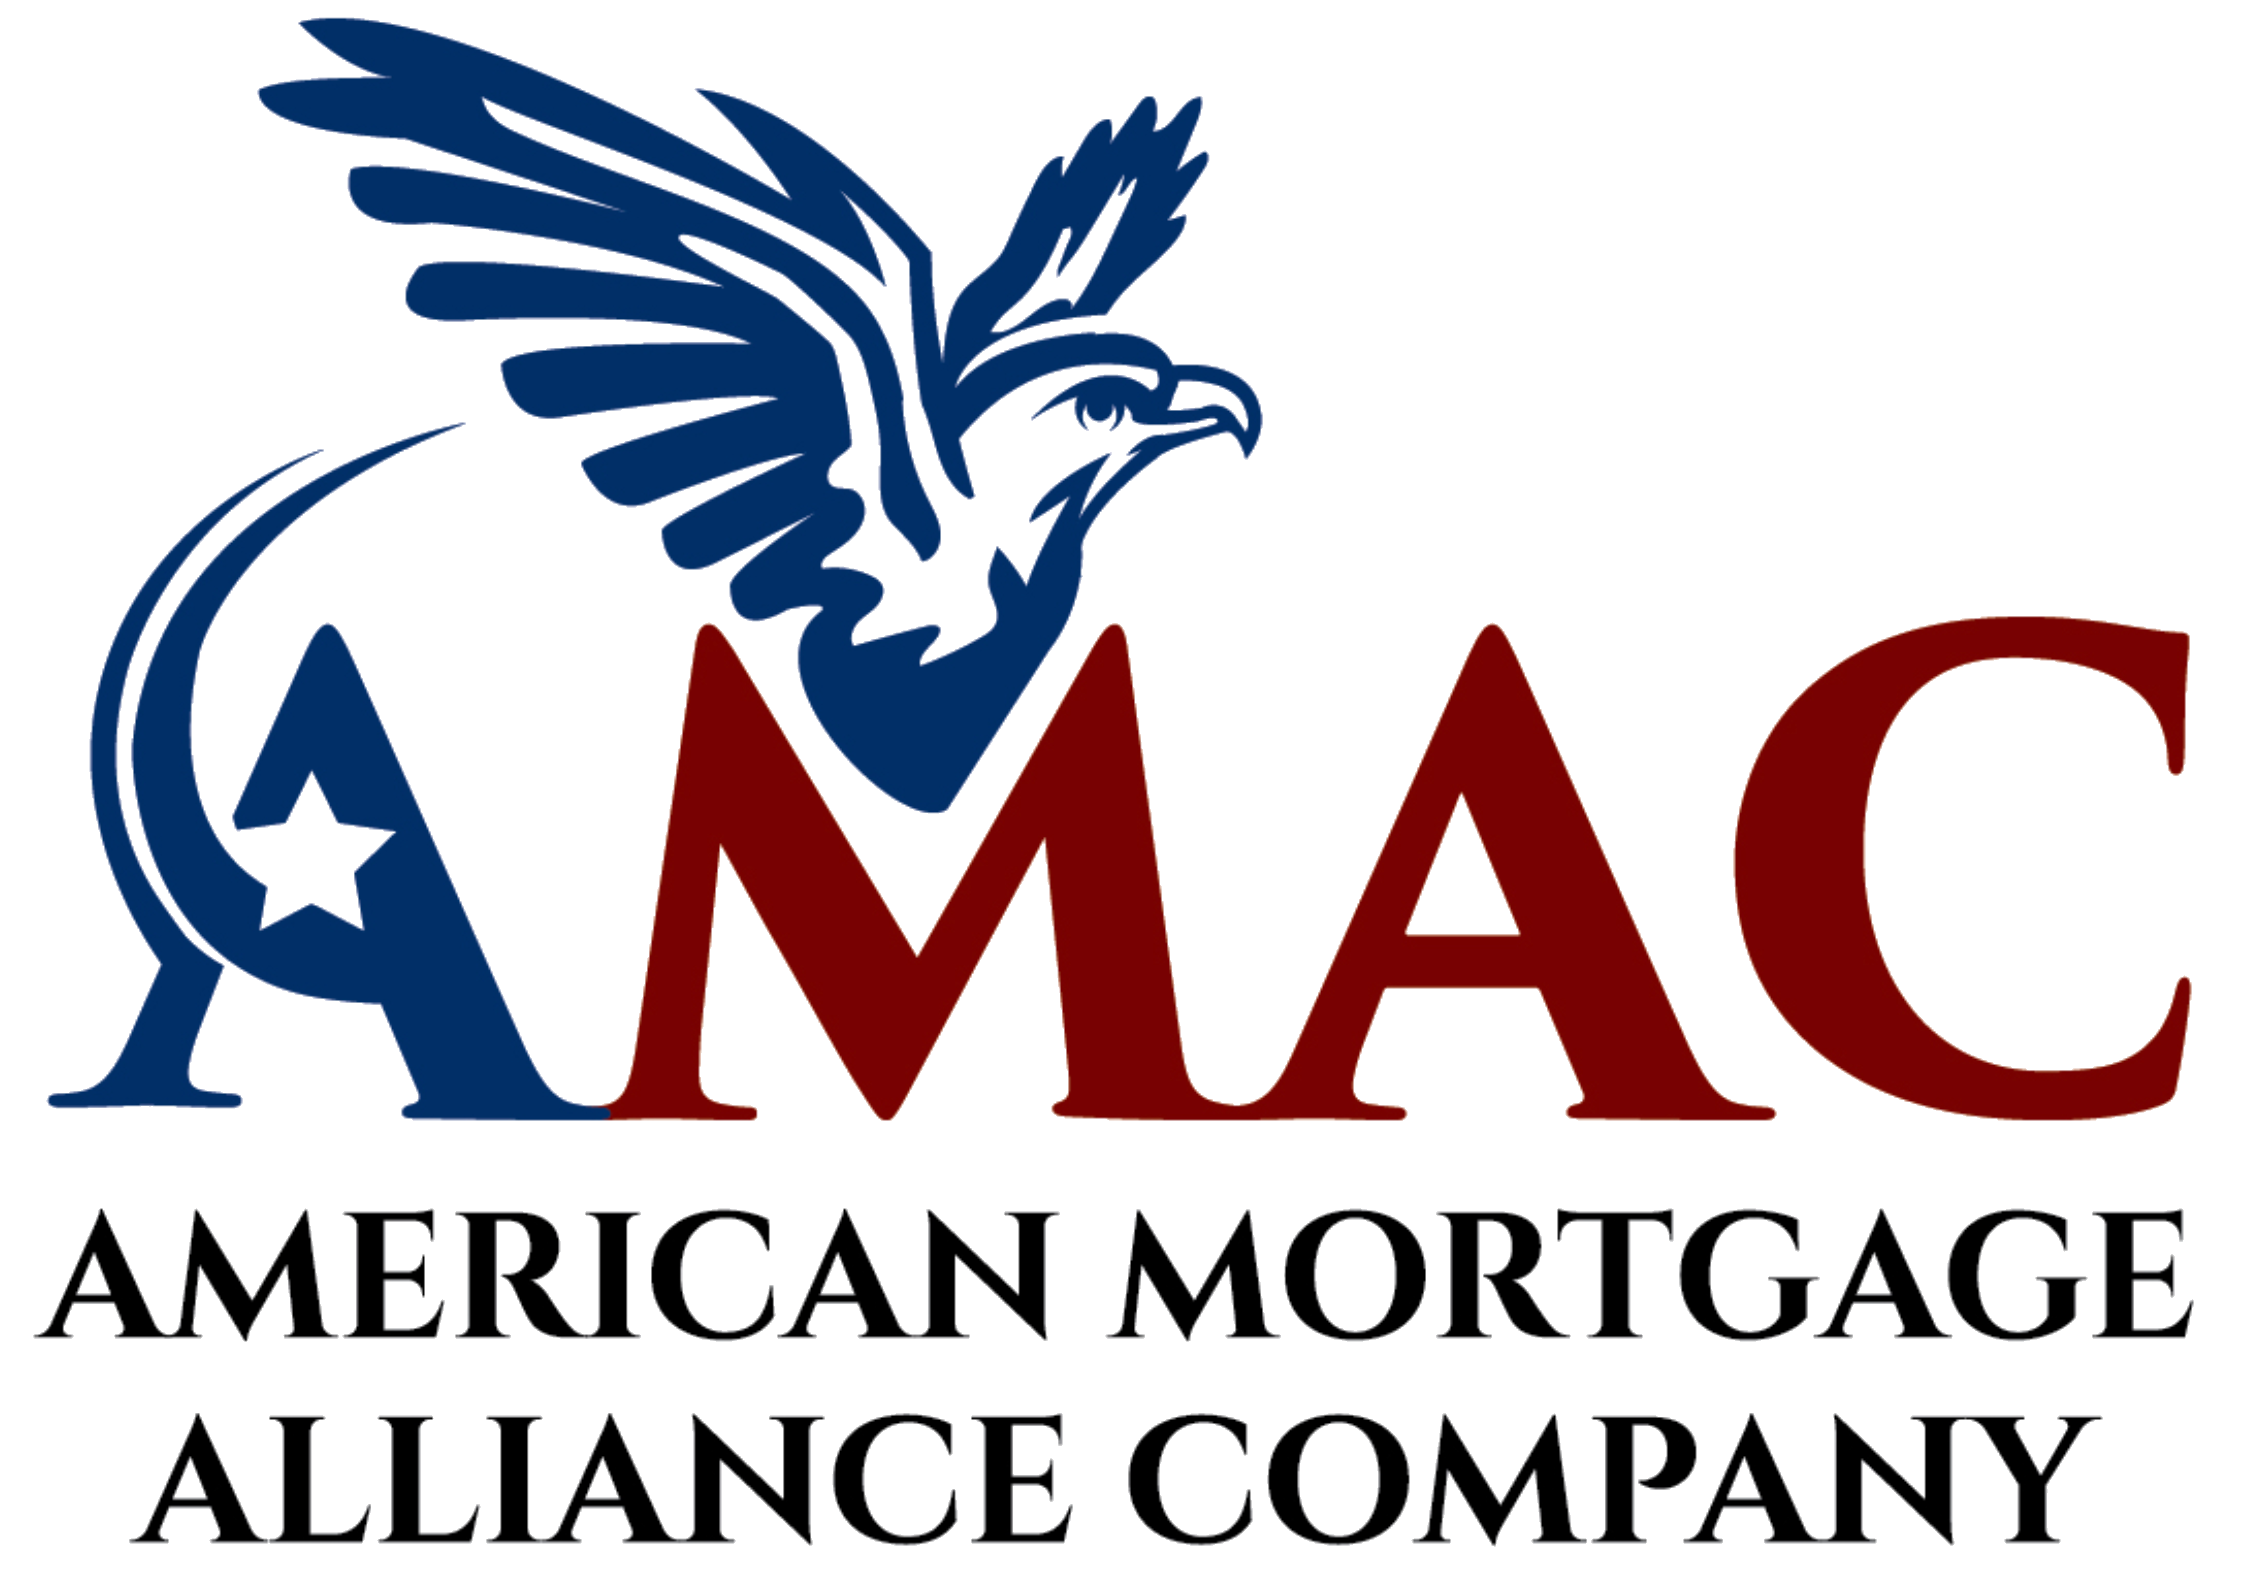 American Mortgage Alliance Company